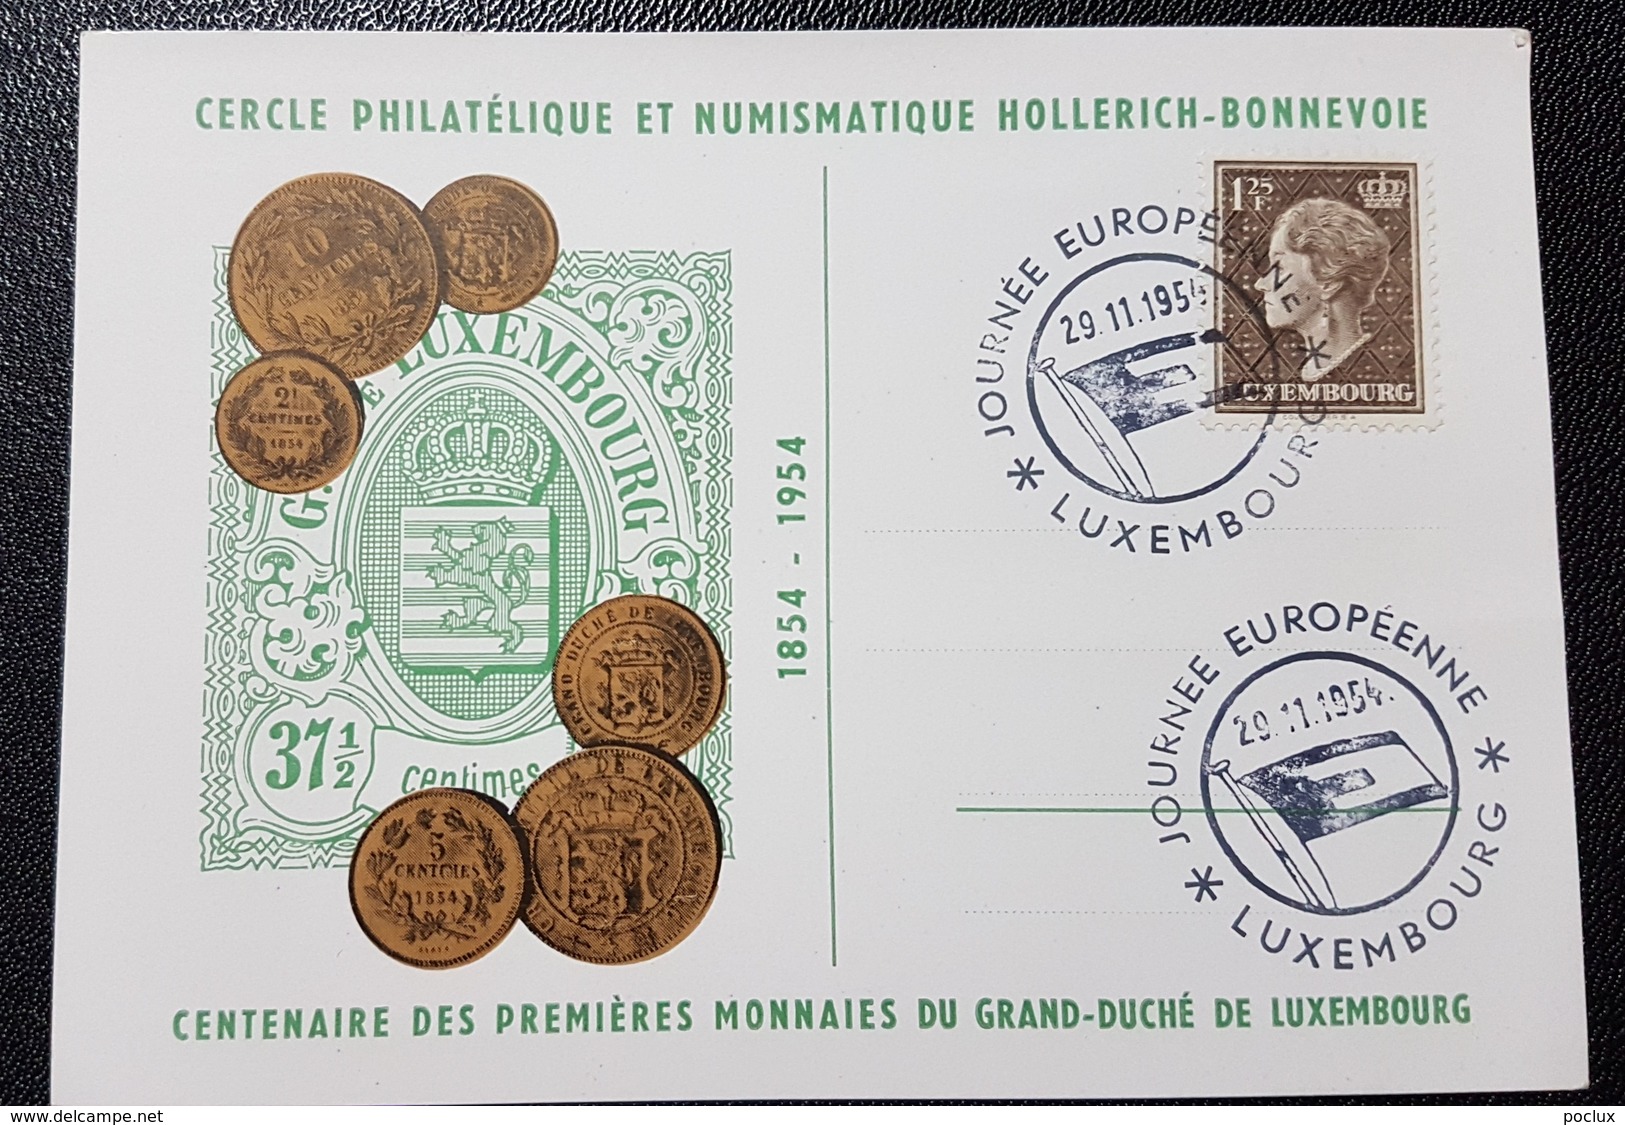 Luxembourg 1954- Journée Européenne Du Timbre 1954- Centenaire De Nos Premières Monnaies Nationales - Cartoline Commemorative